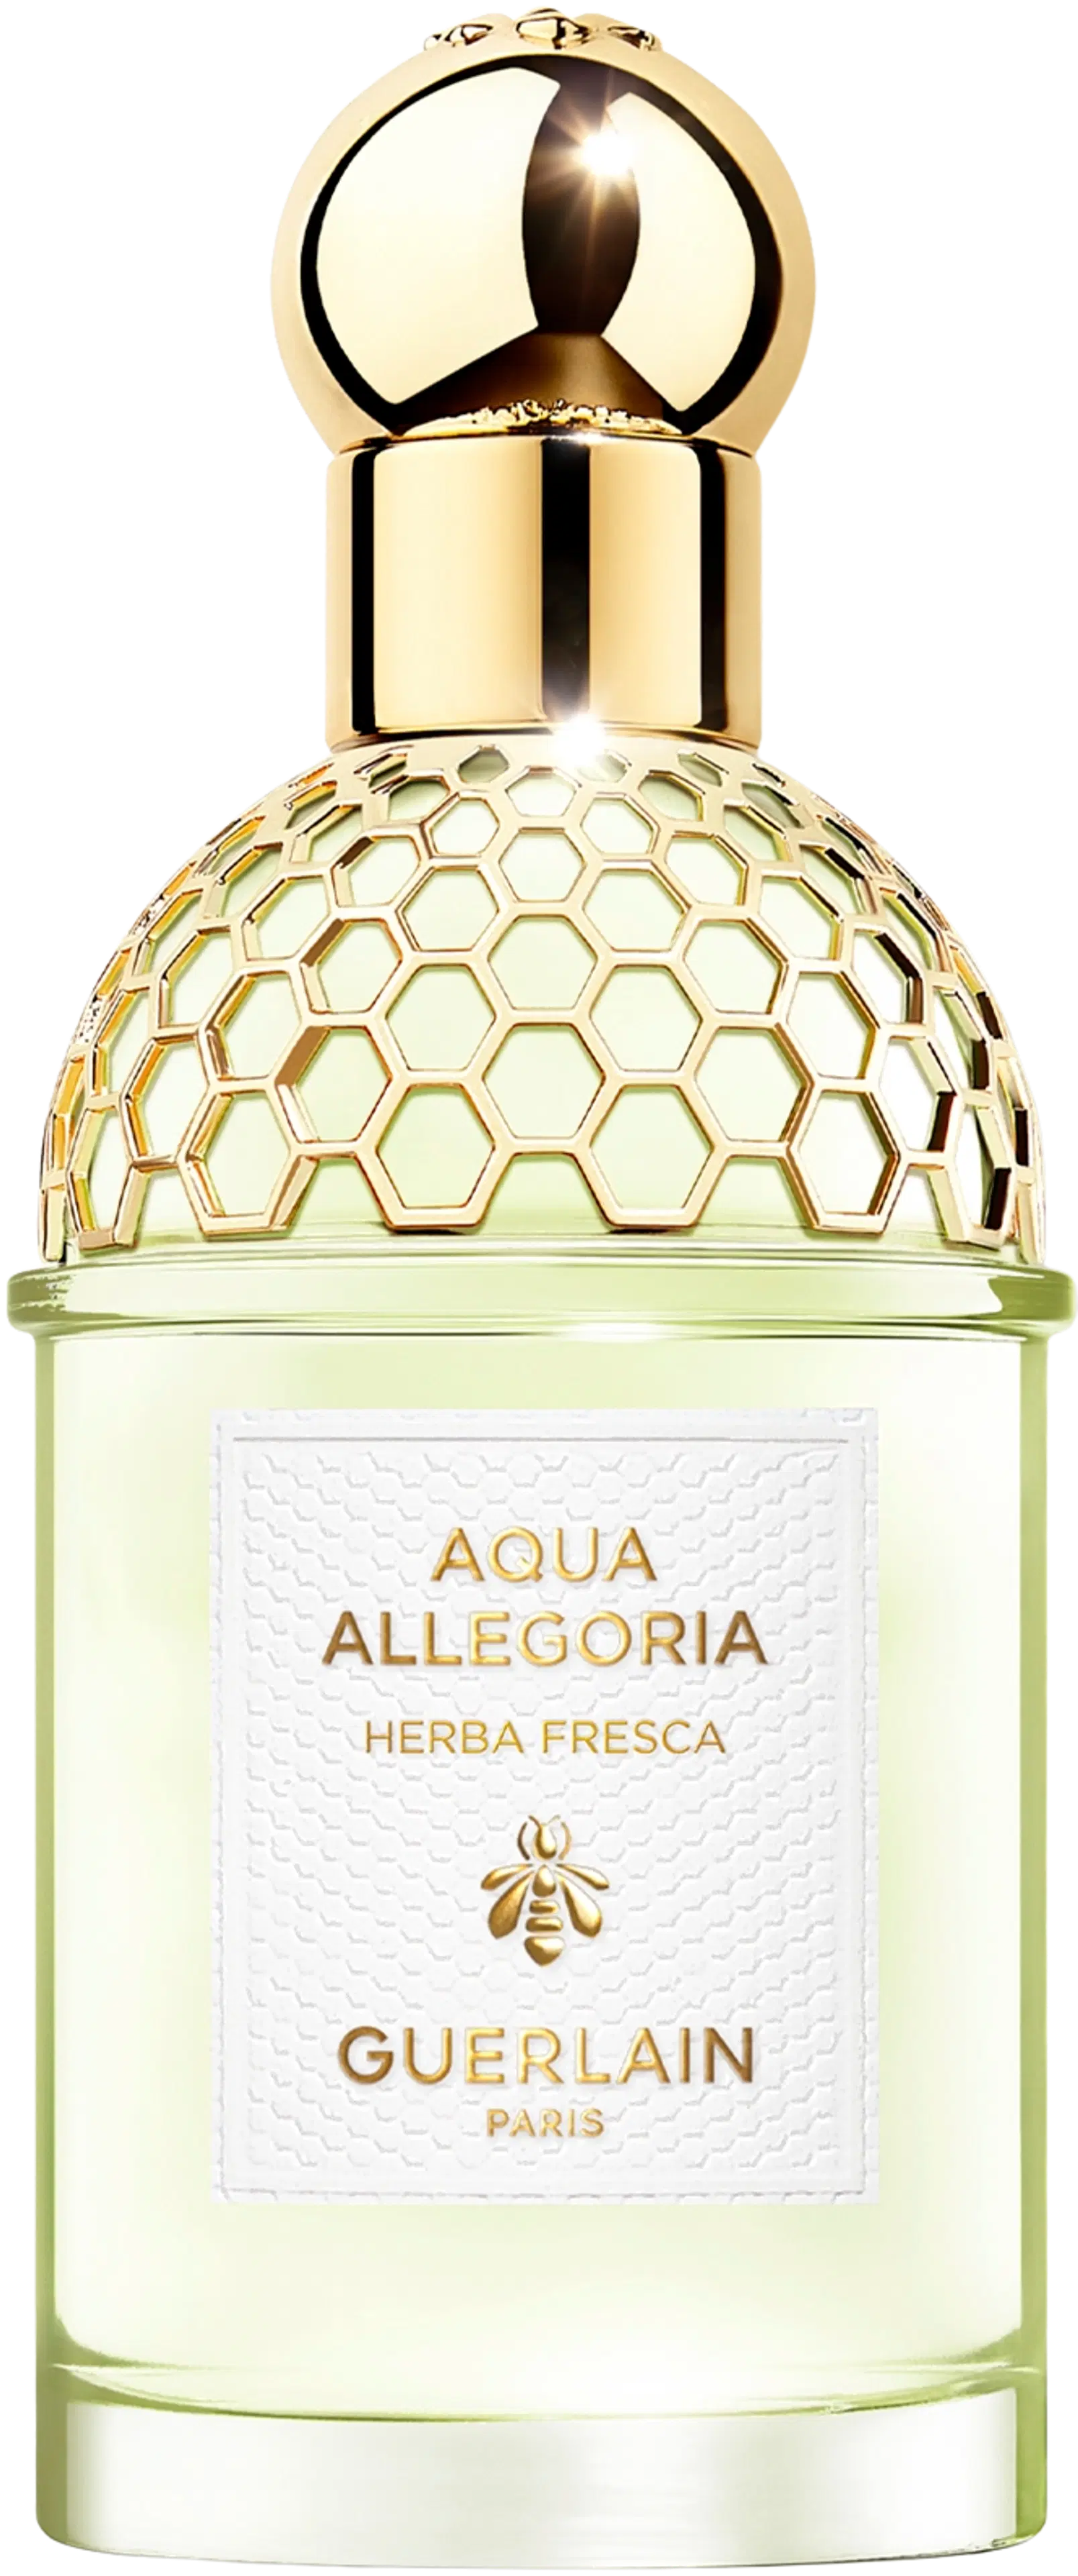 Guerlain Aqua Allegoria Herba Fresca EDT 75 ml